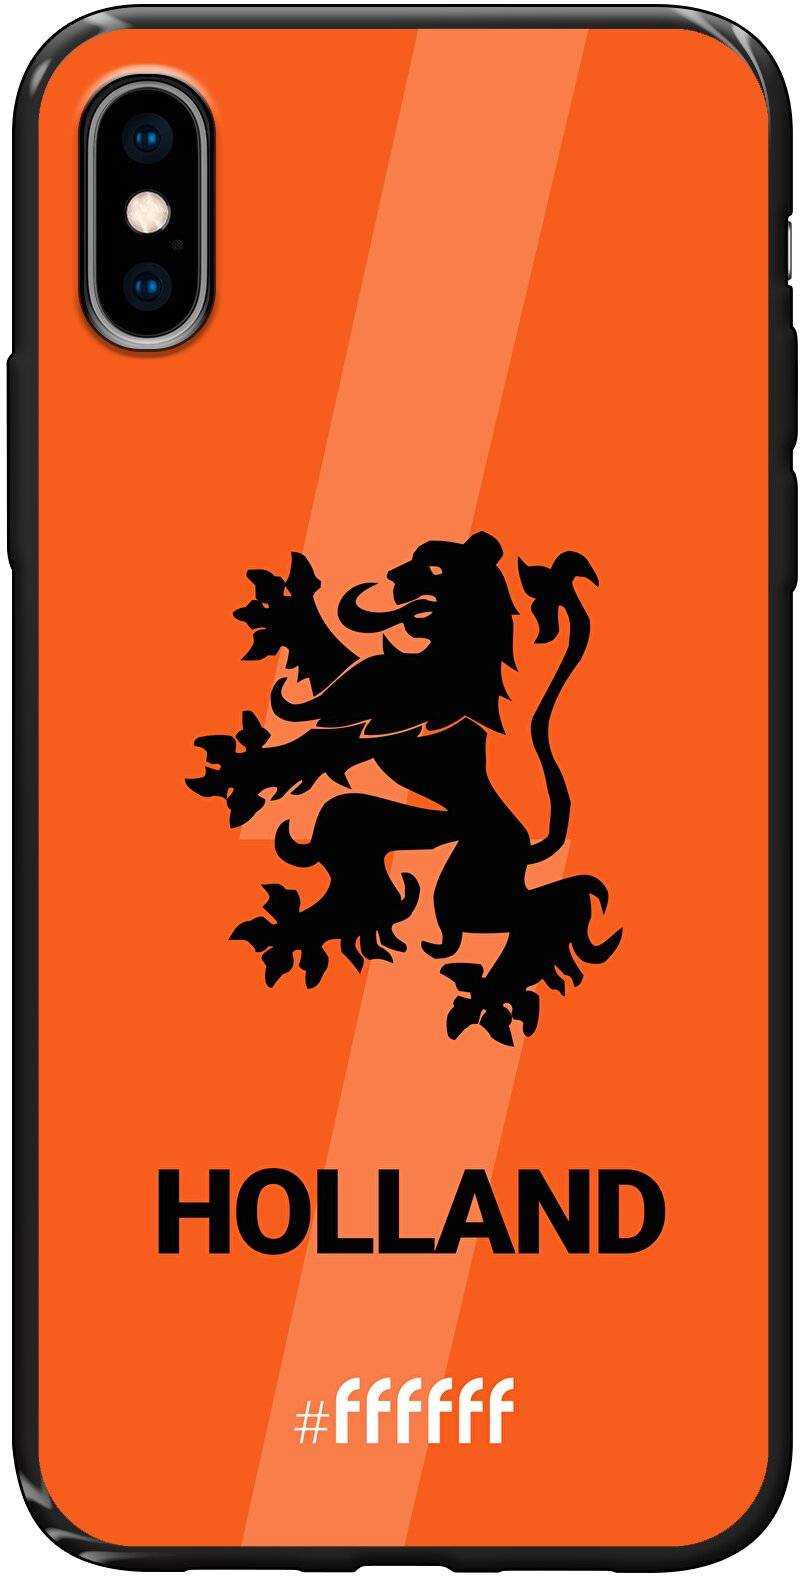 Nederlands Elftal - Holland iPhone X